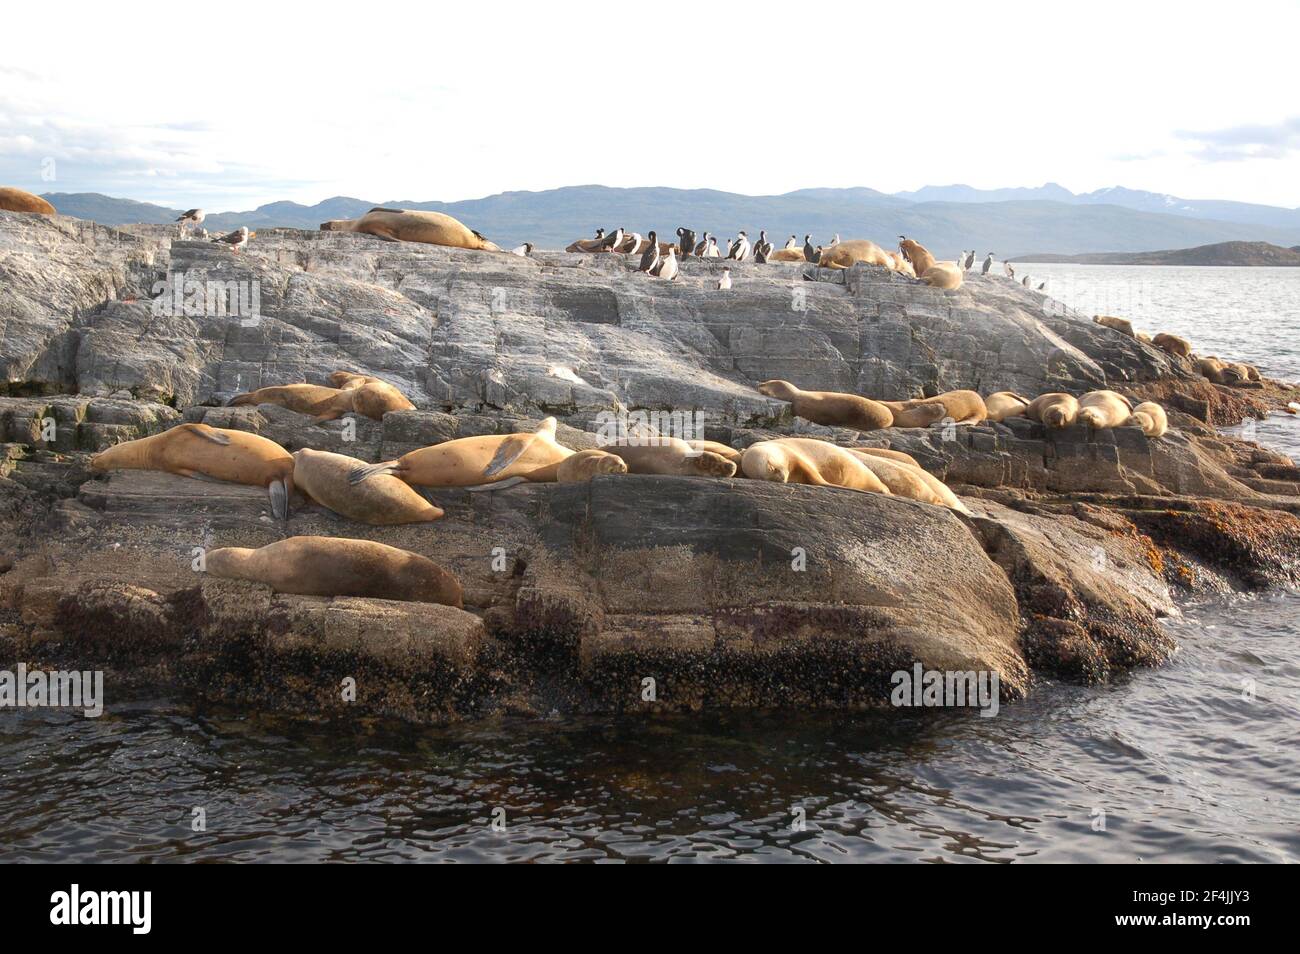 Un gruppo di foche da pelliccia a Ushuaa alle estremità della terra. Argentina. Ampio angolo di visione, fotografia reale della fauna selvatica. Foto Stock